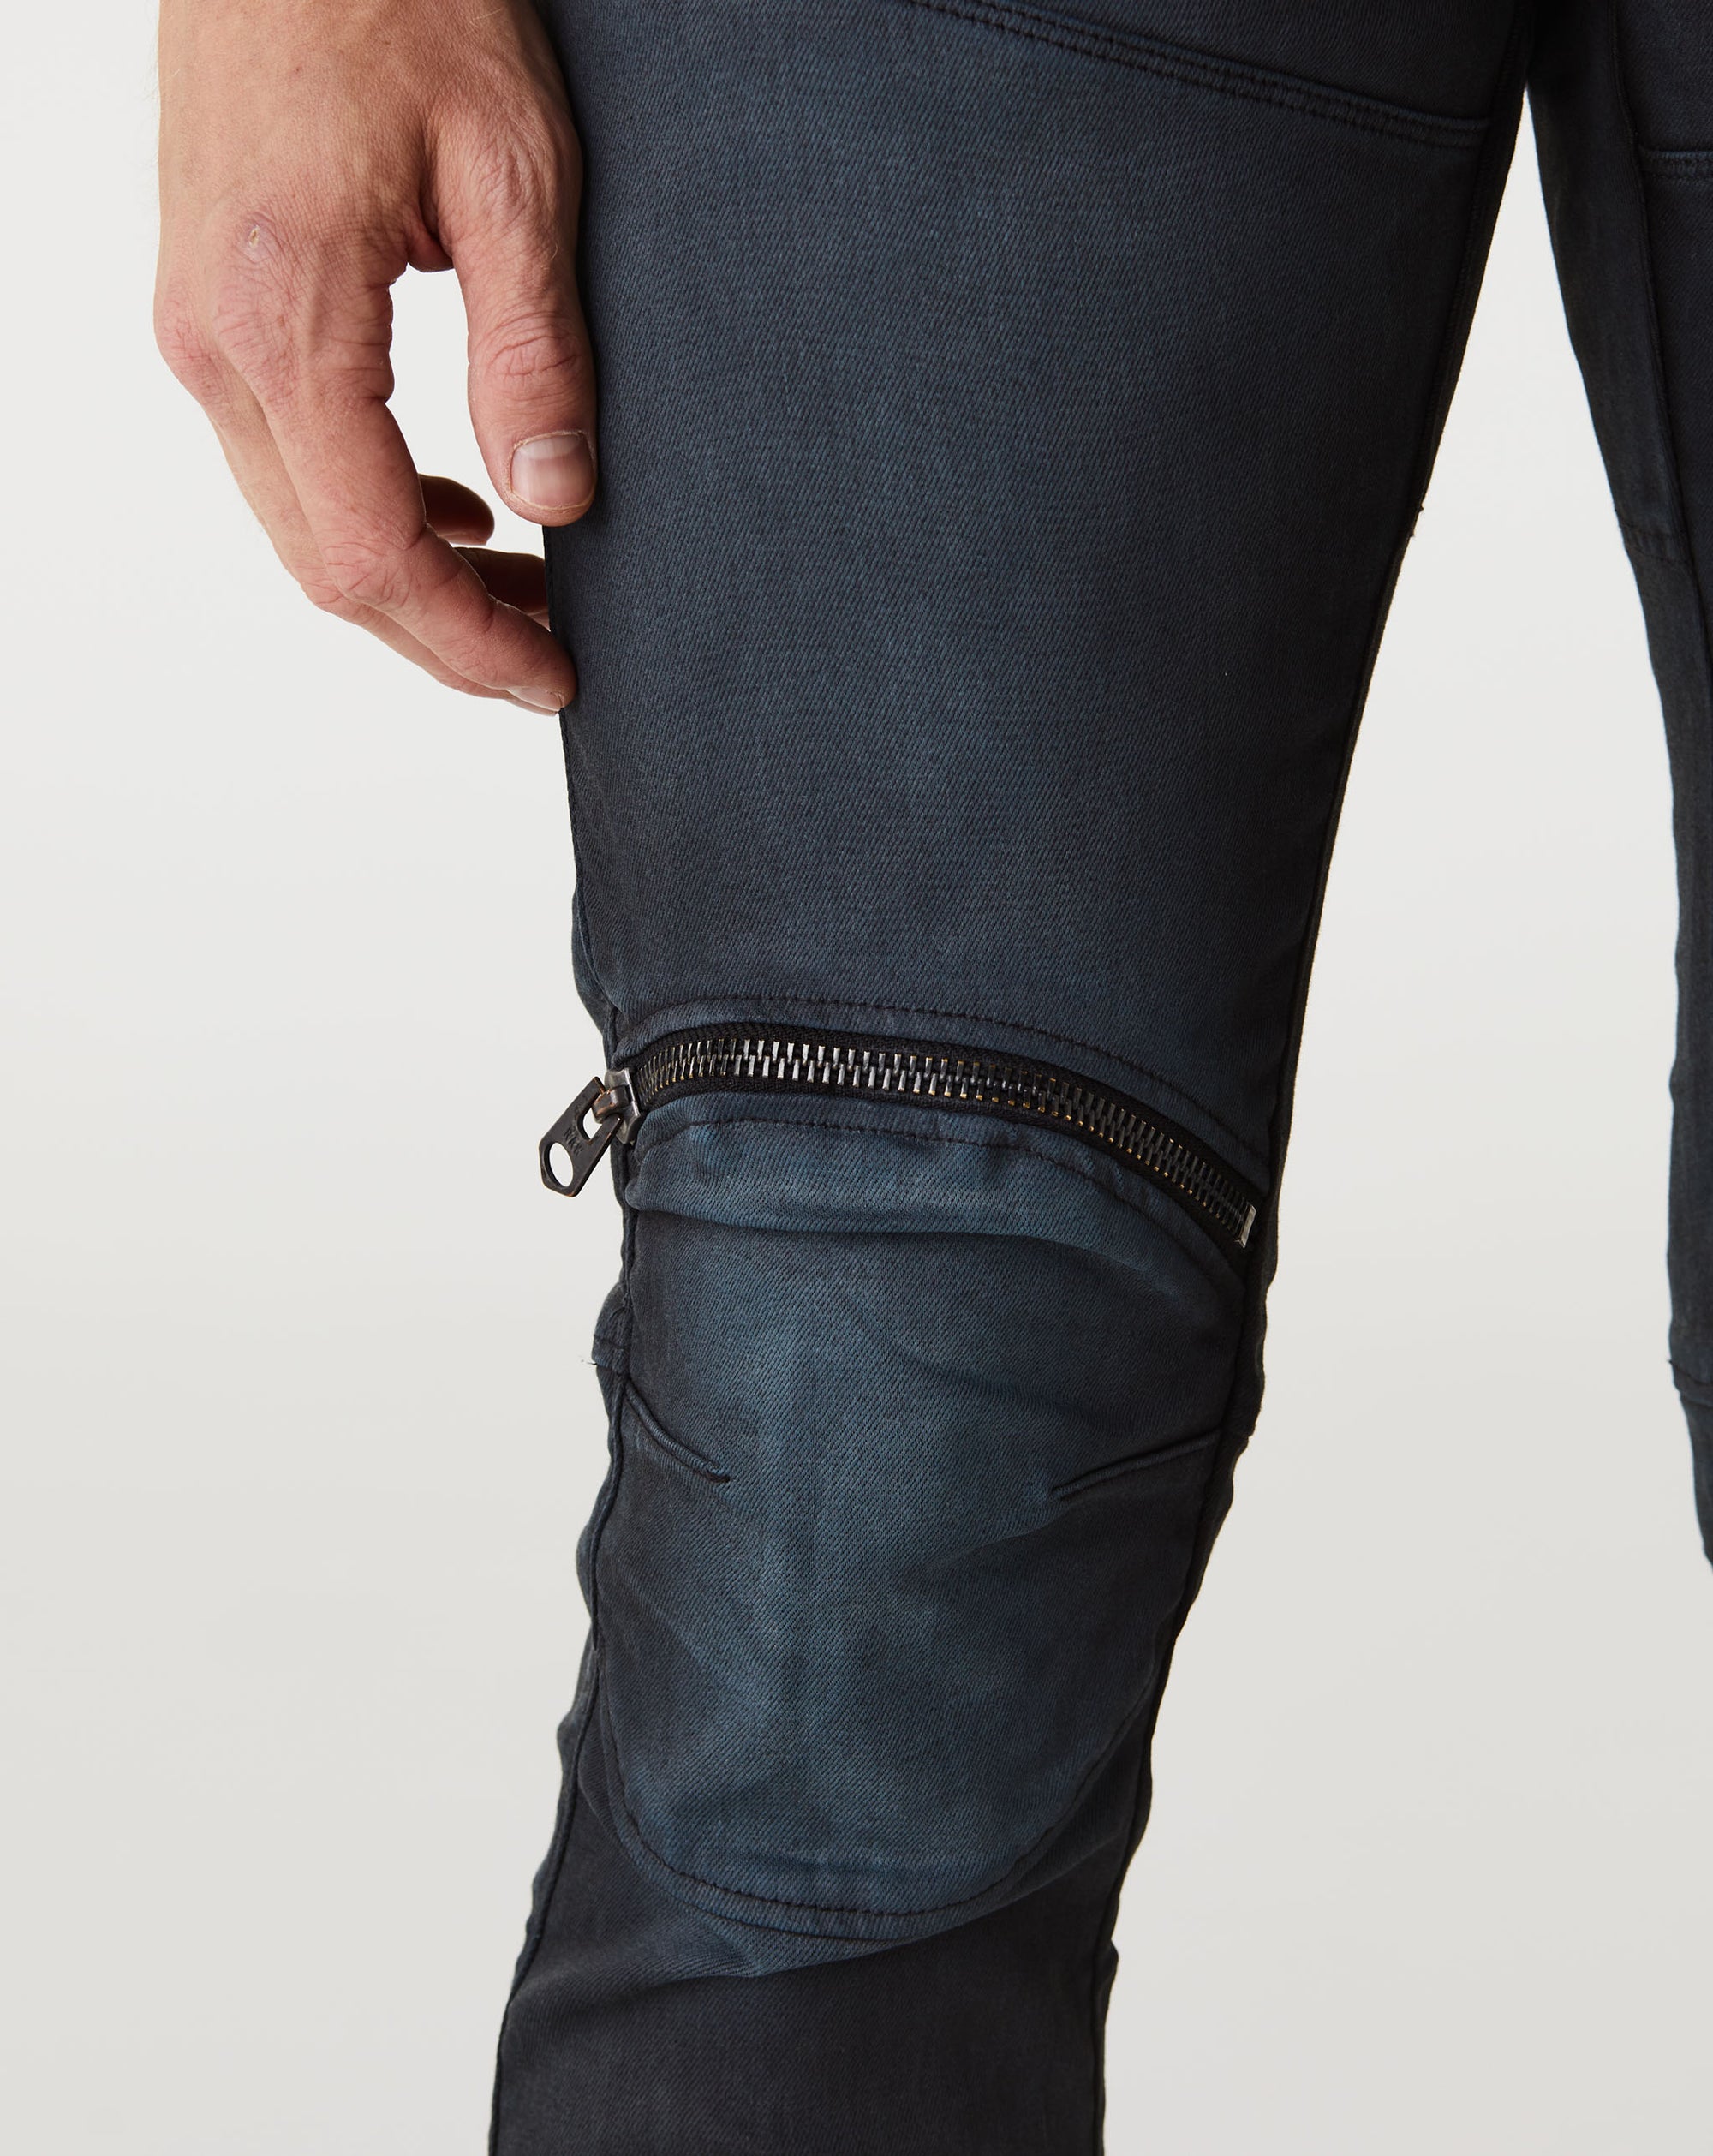 G-Star RAW 5620 3D Zip Knee Skinny Jeans - Rule of Next Apparel